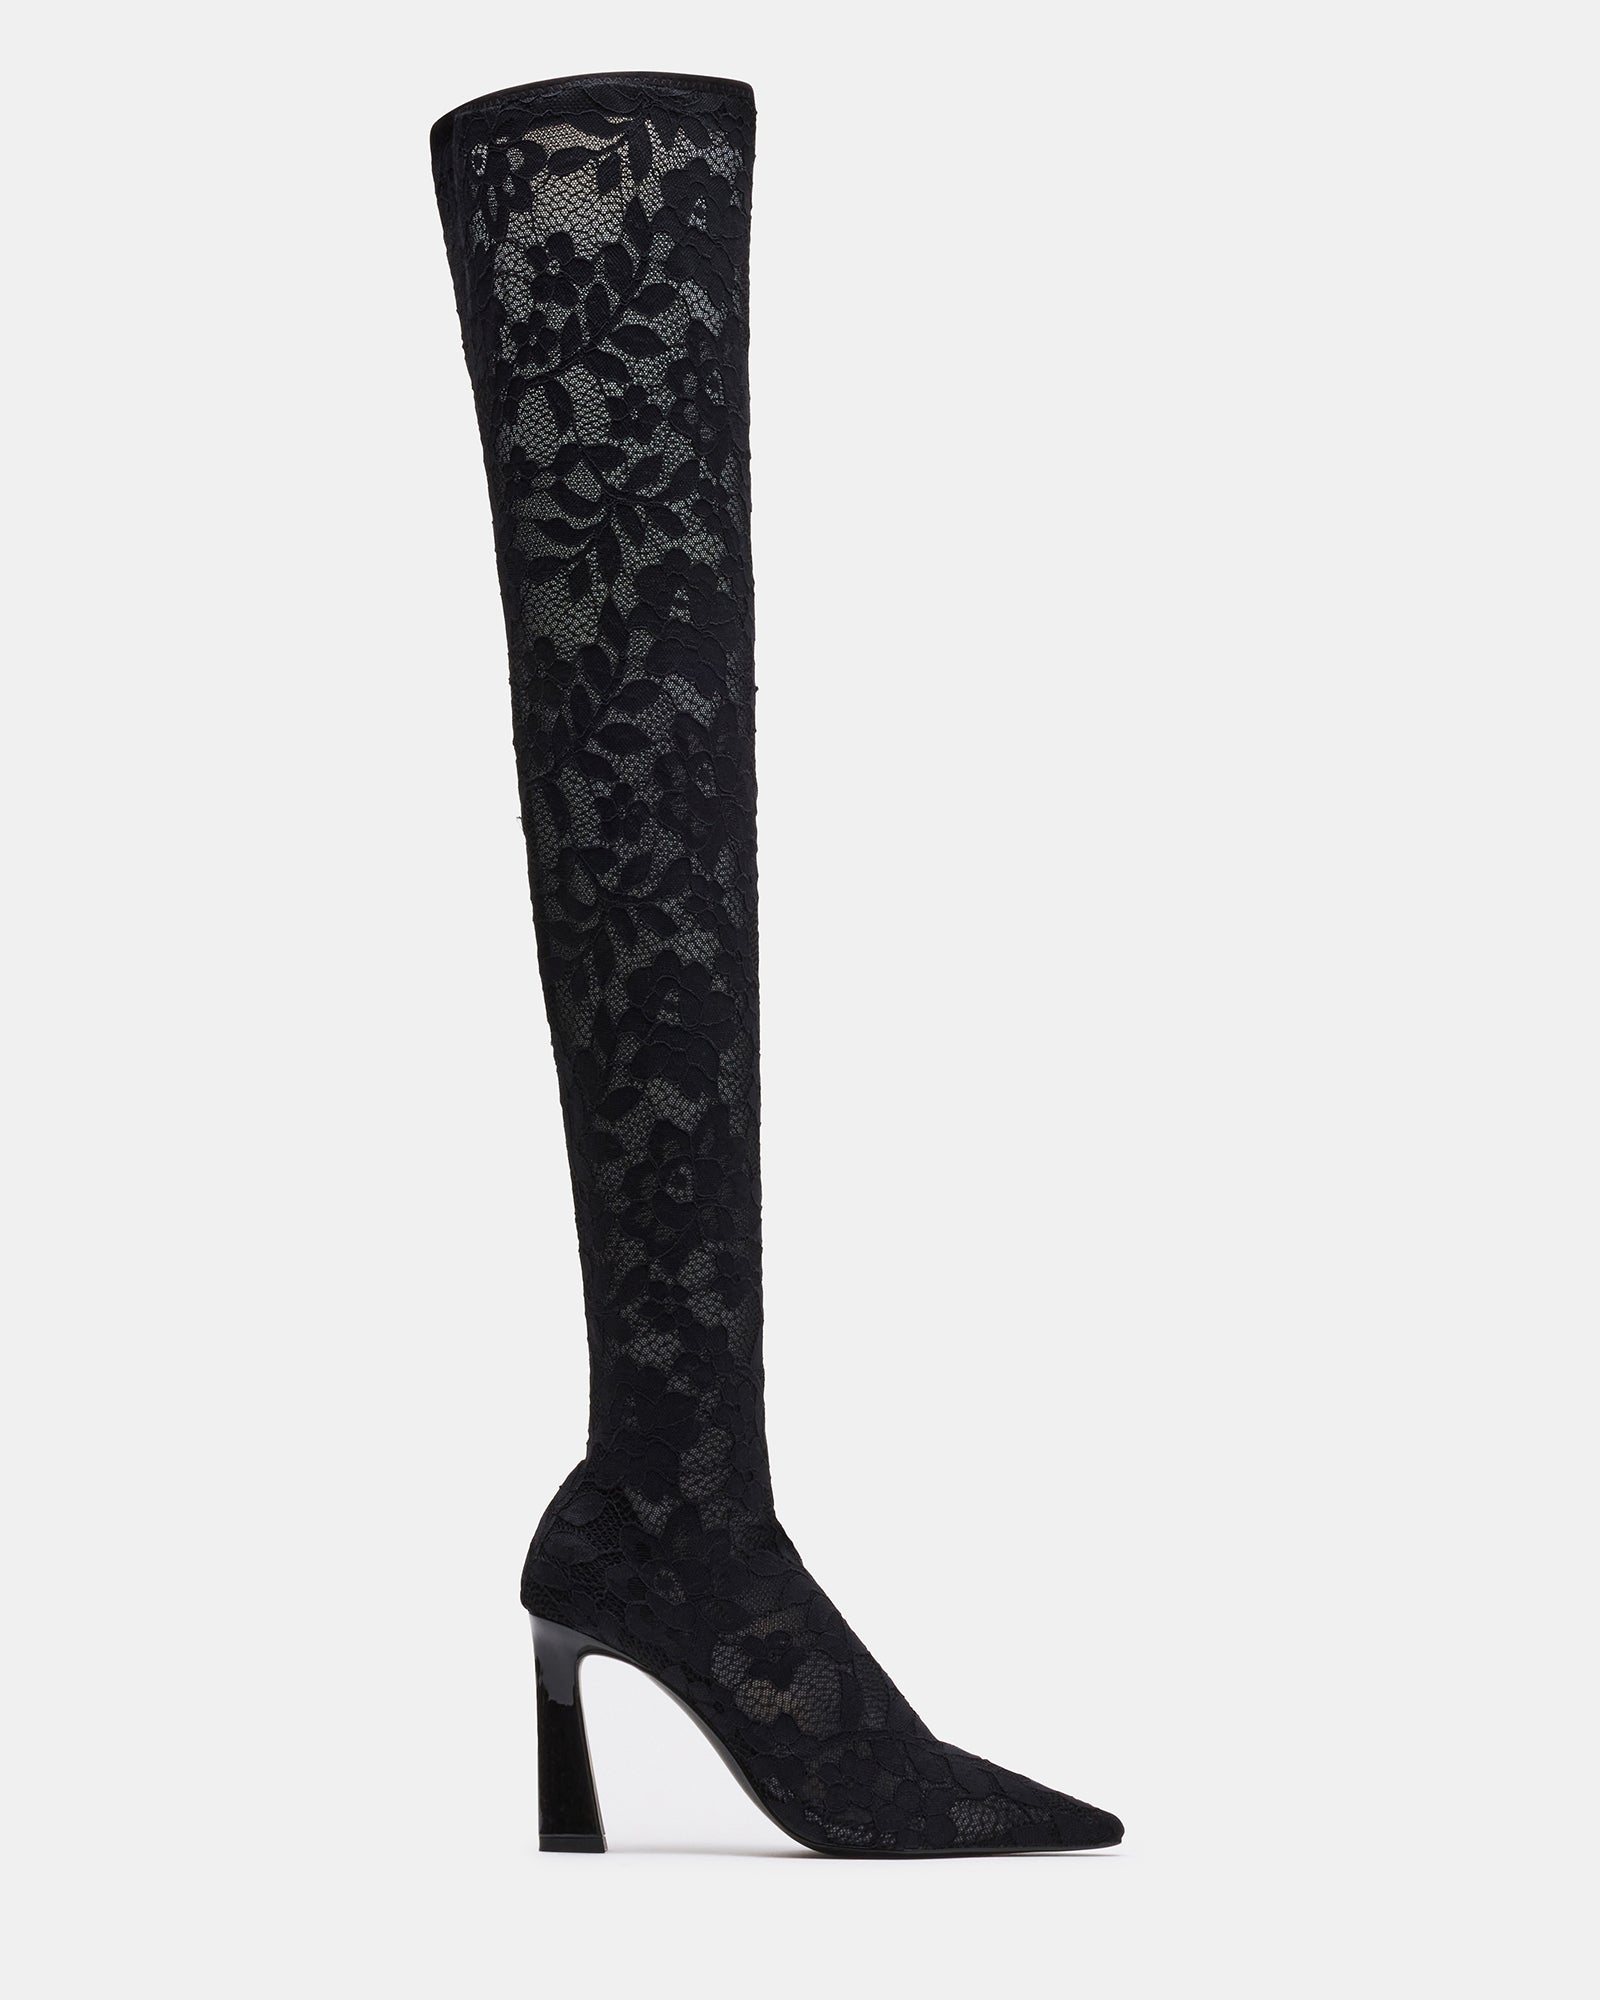 SERENE Black Lace Thigh High Boot | Women's Boots – Steve Madden